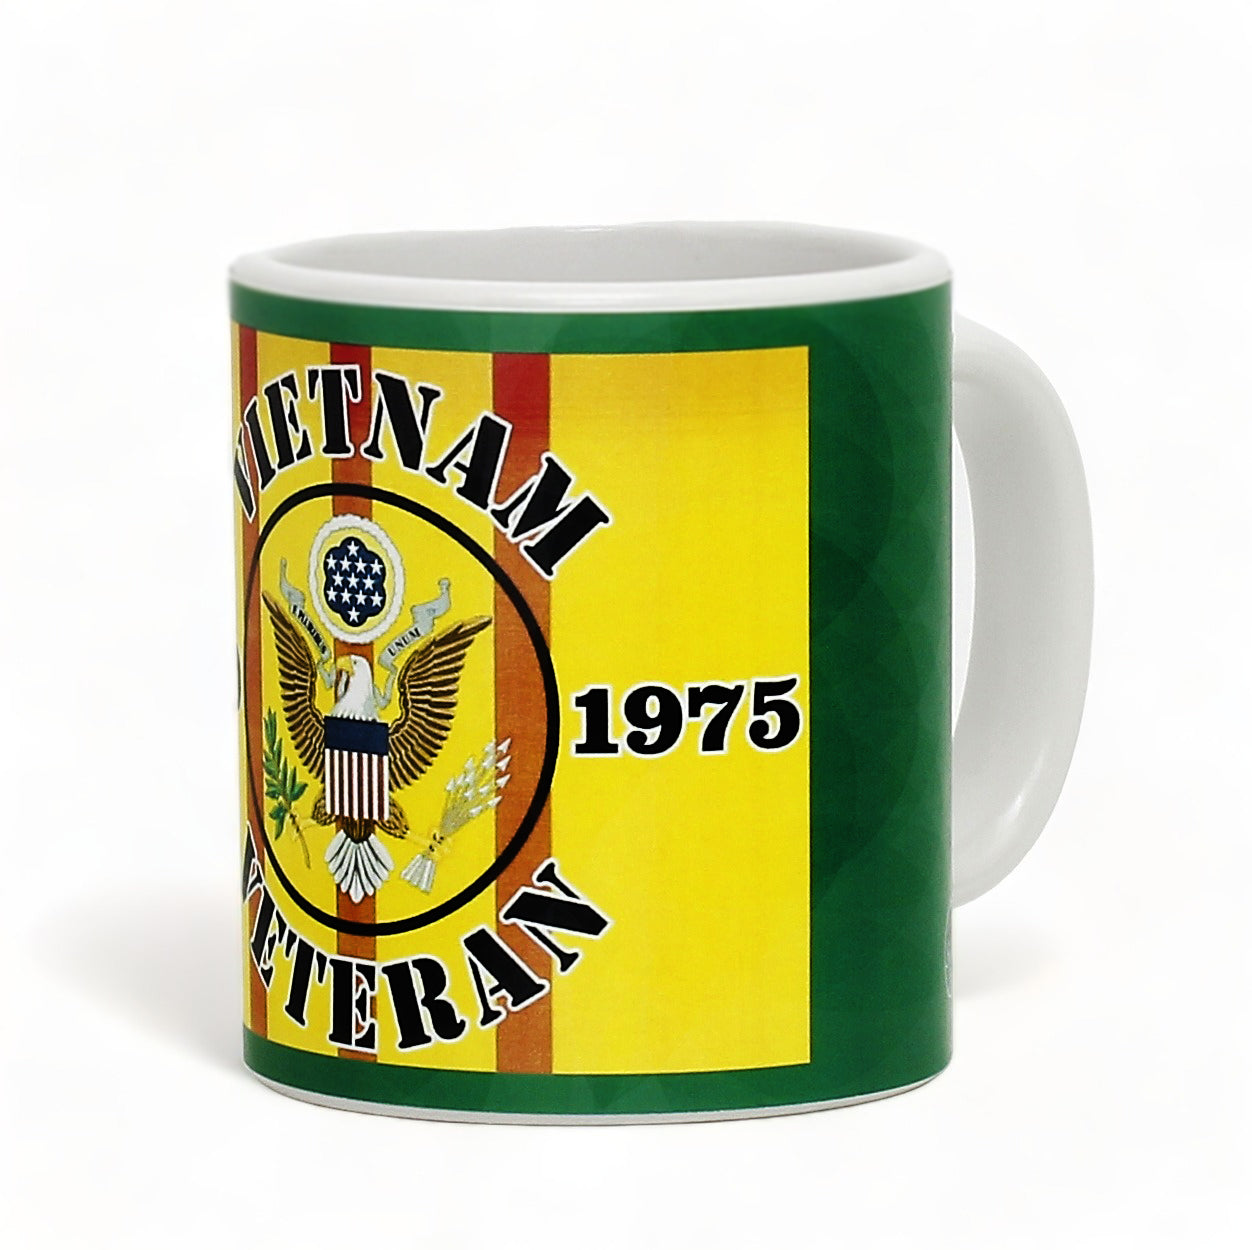 SUBLIMART: Veteran - Mug 'Vietnam Veteran 1960-1975' (Design #27)